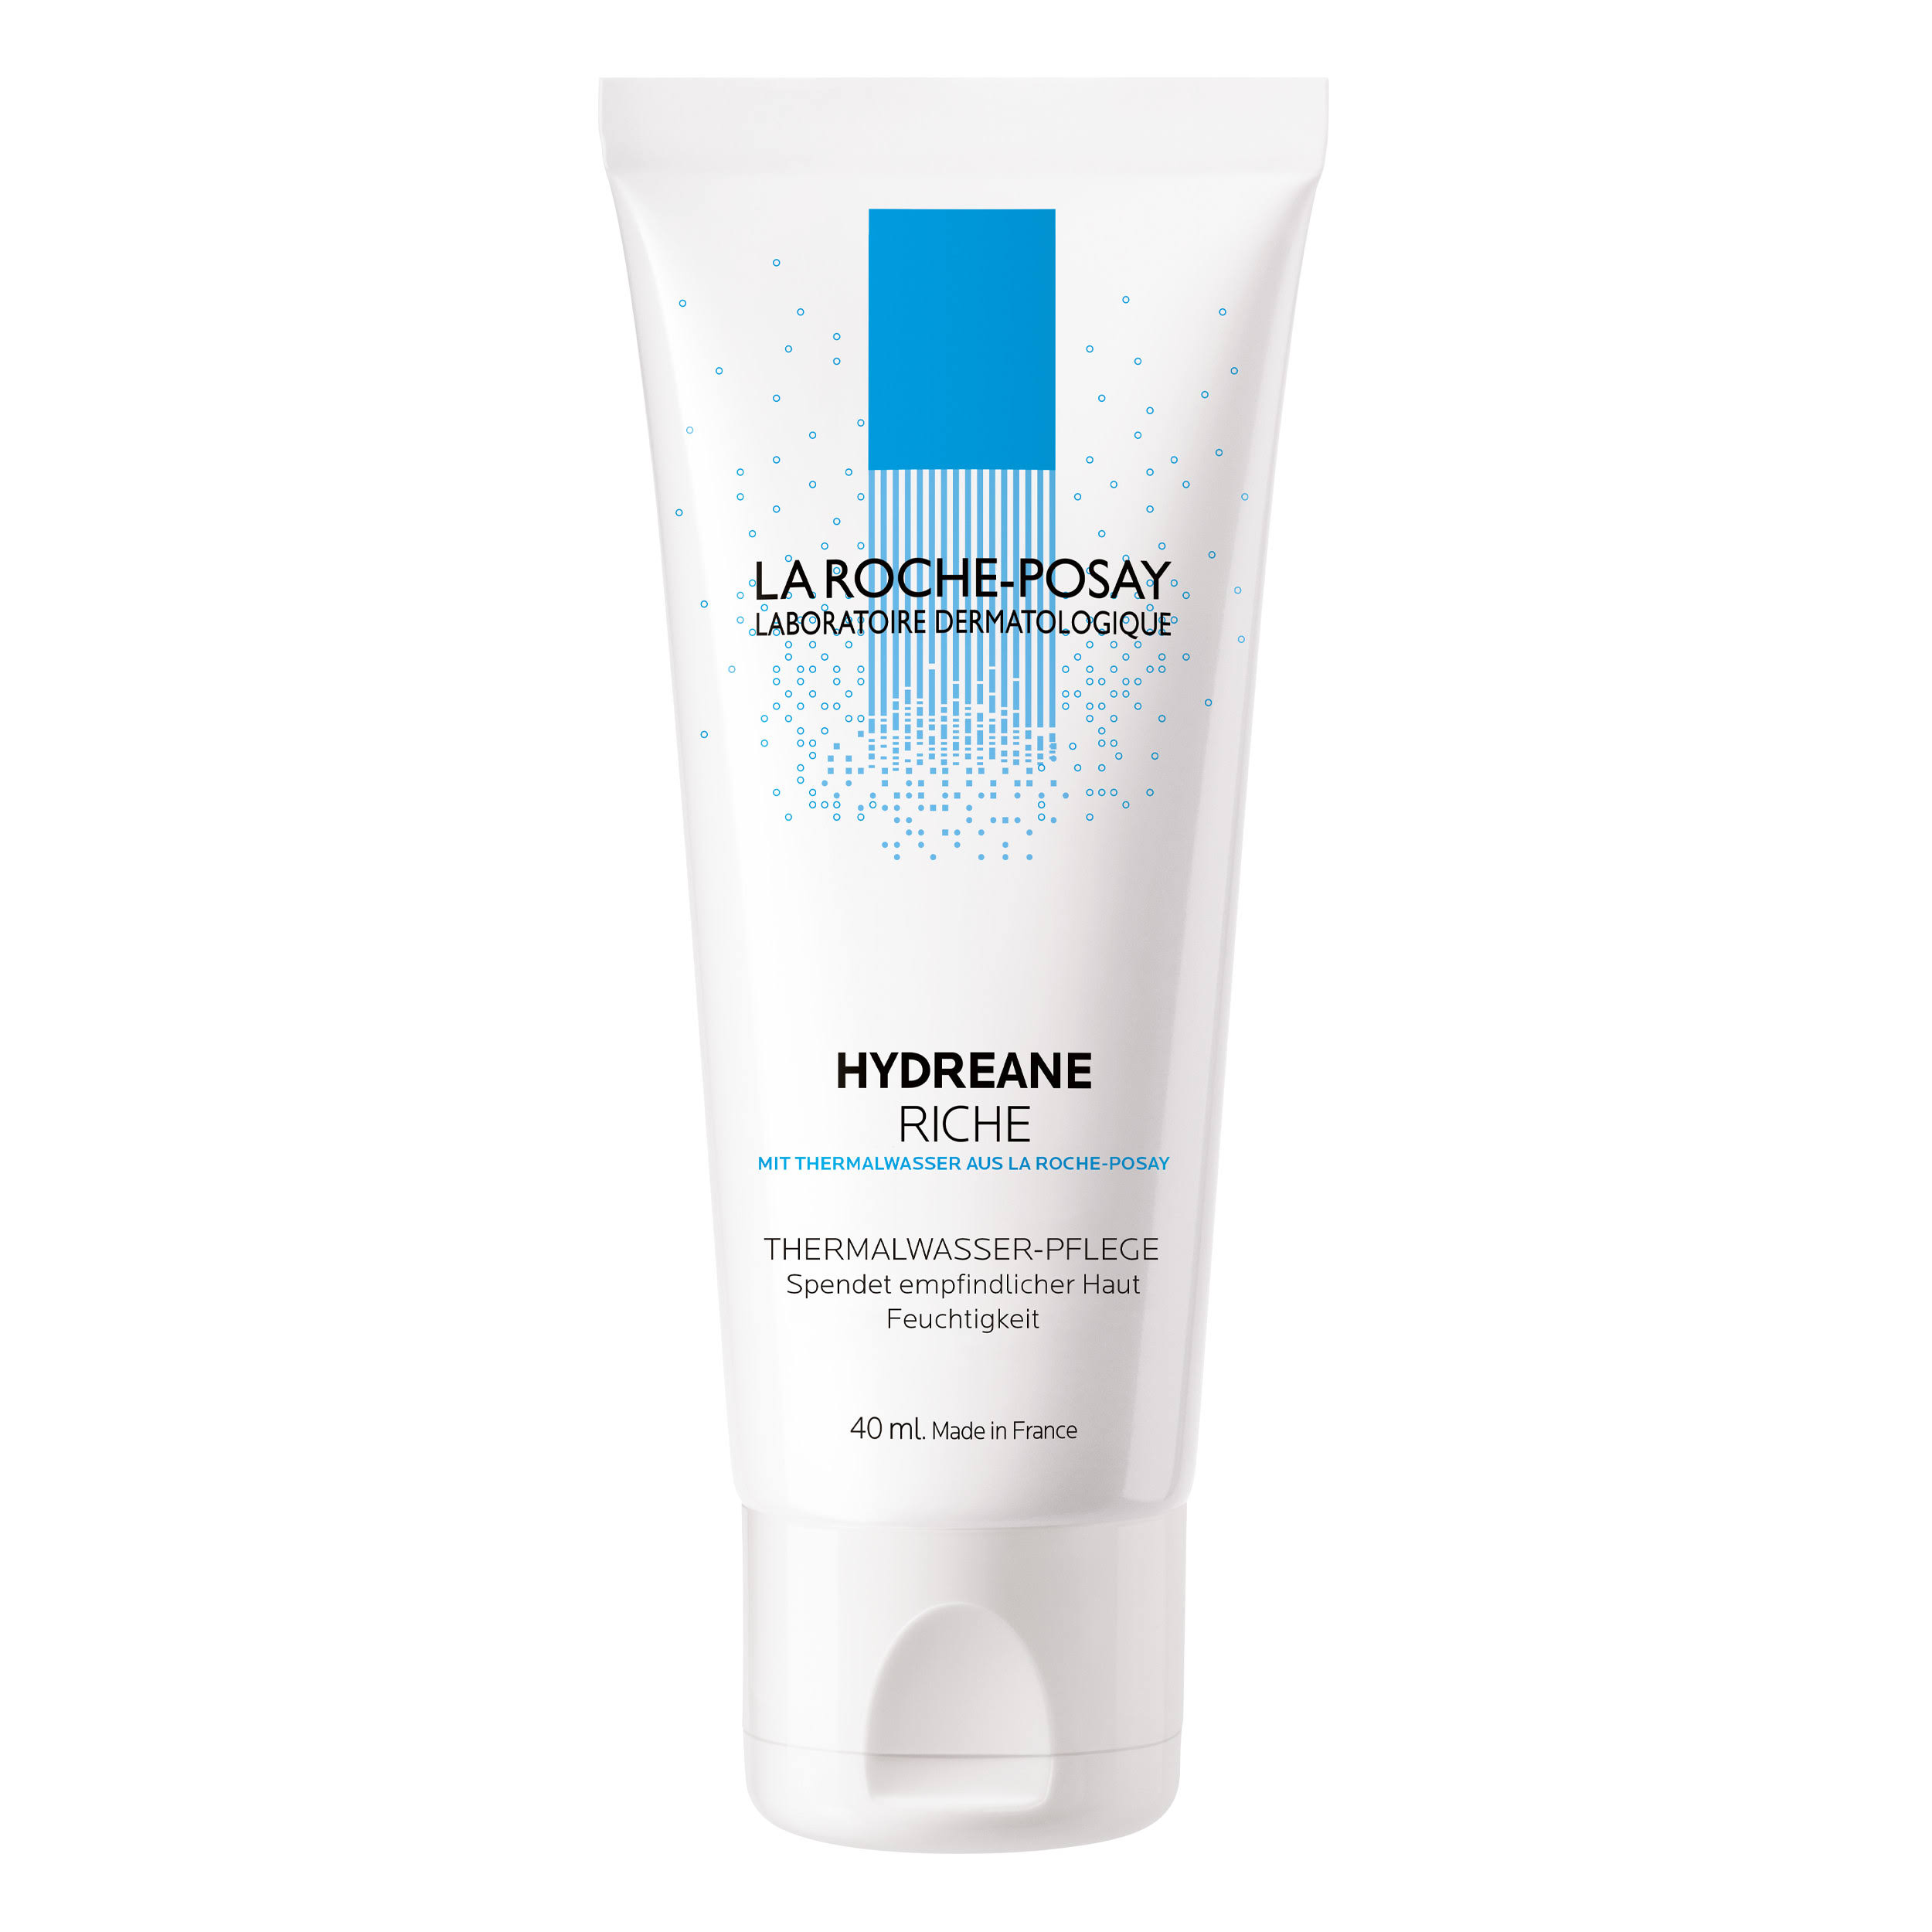 La Roche-Posay Hydreane Riche Thermal Spring Water Cream - Sensitive Skin, 40ml